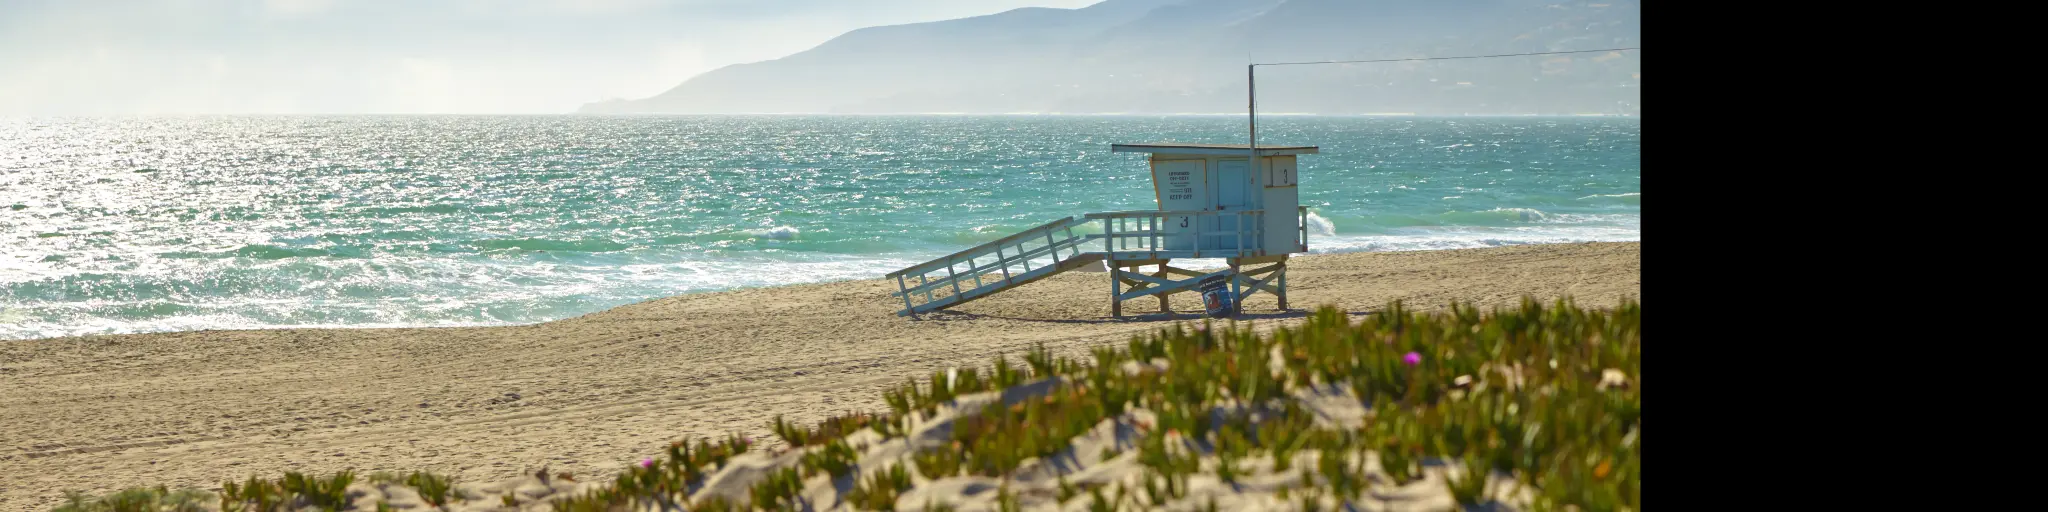 Lifeguard hut on a pristine beach in Malibu, California